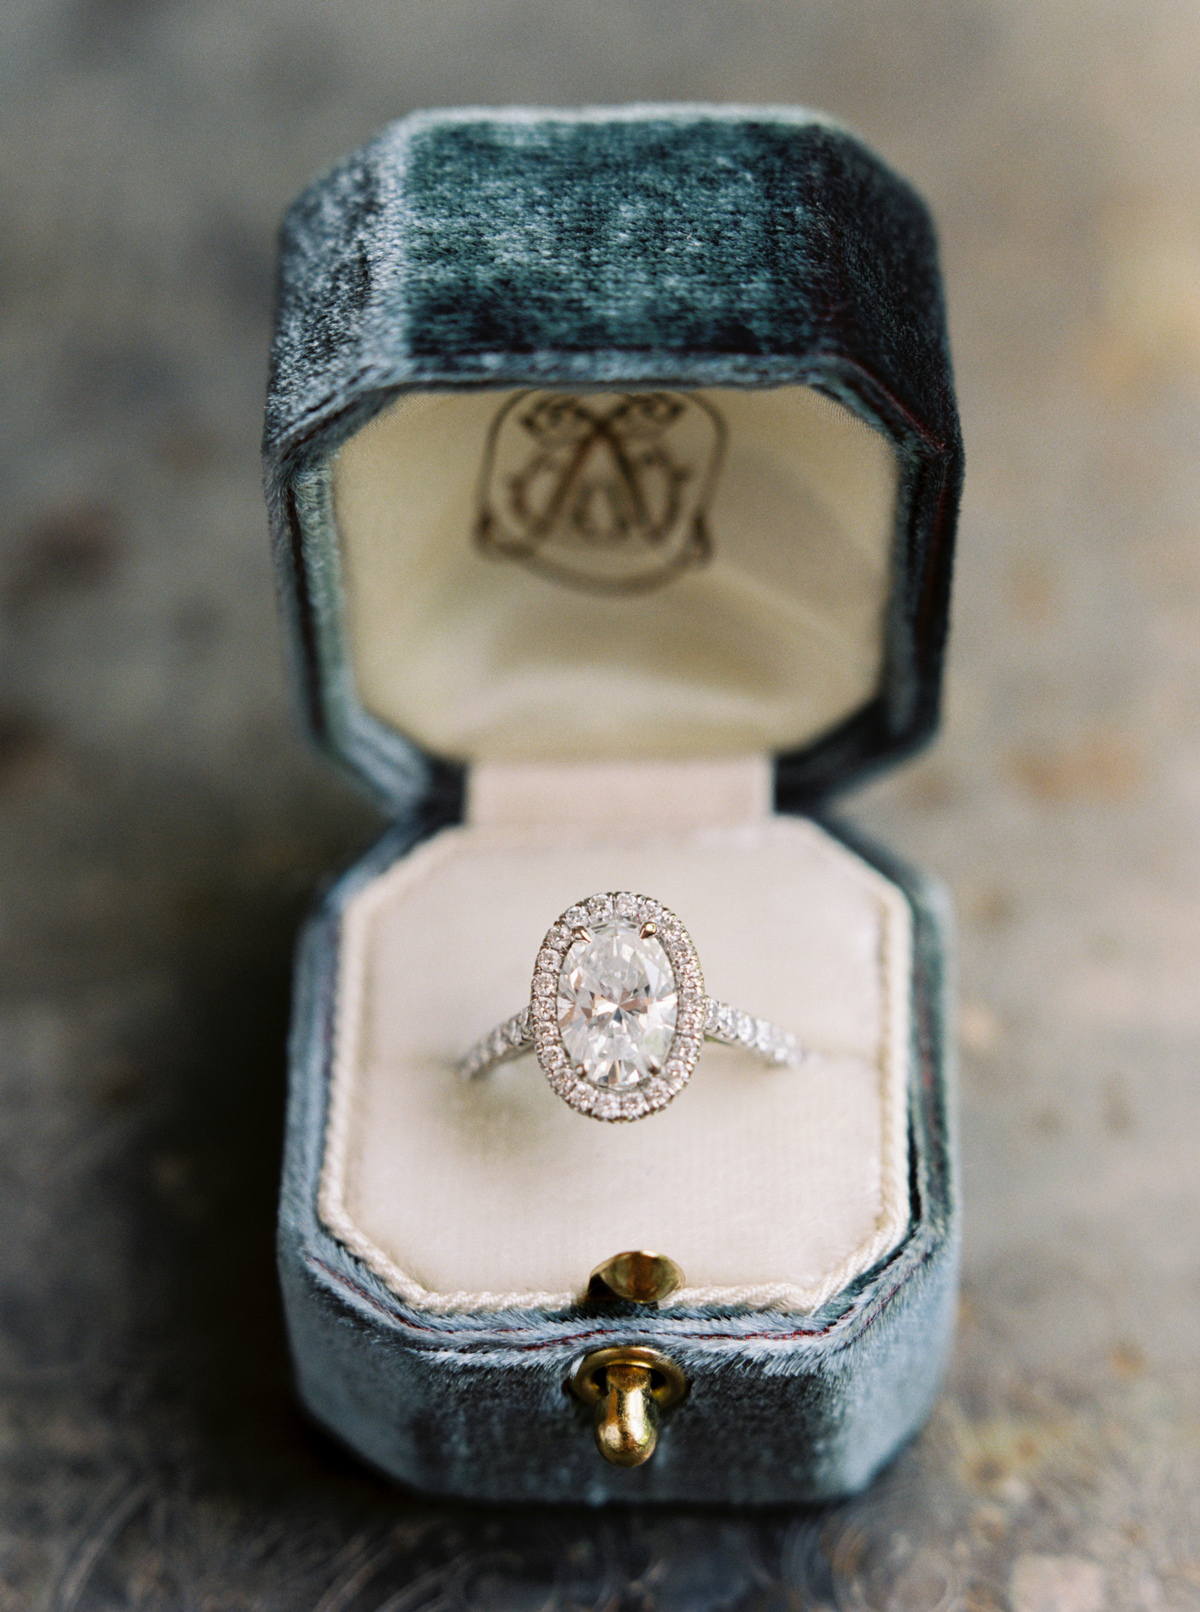 jada-jeffrey-wedding-ring-0619.jpg